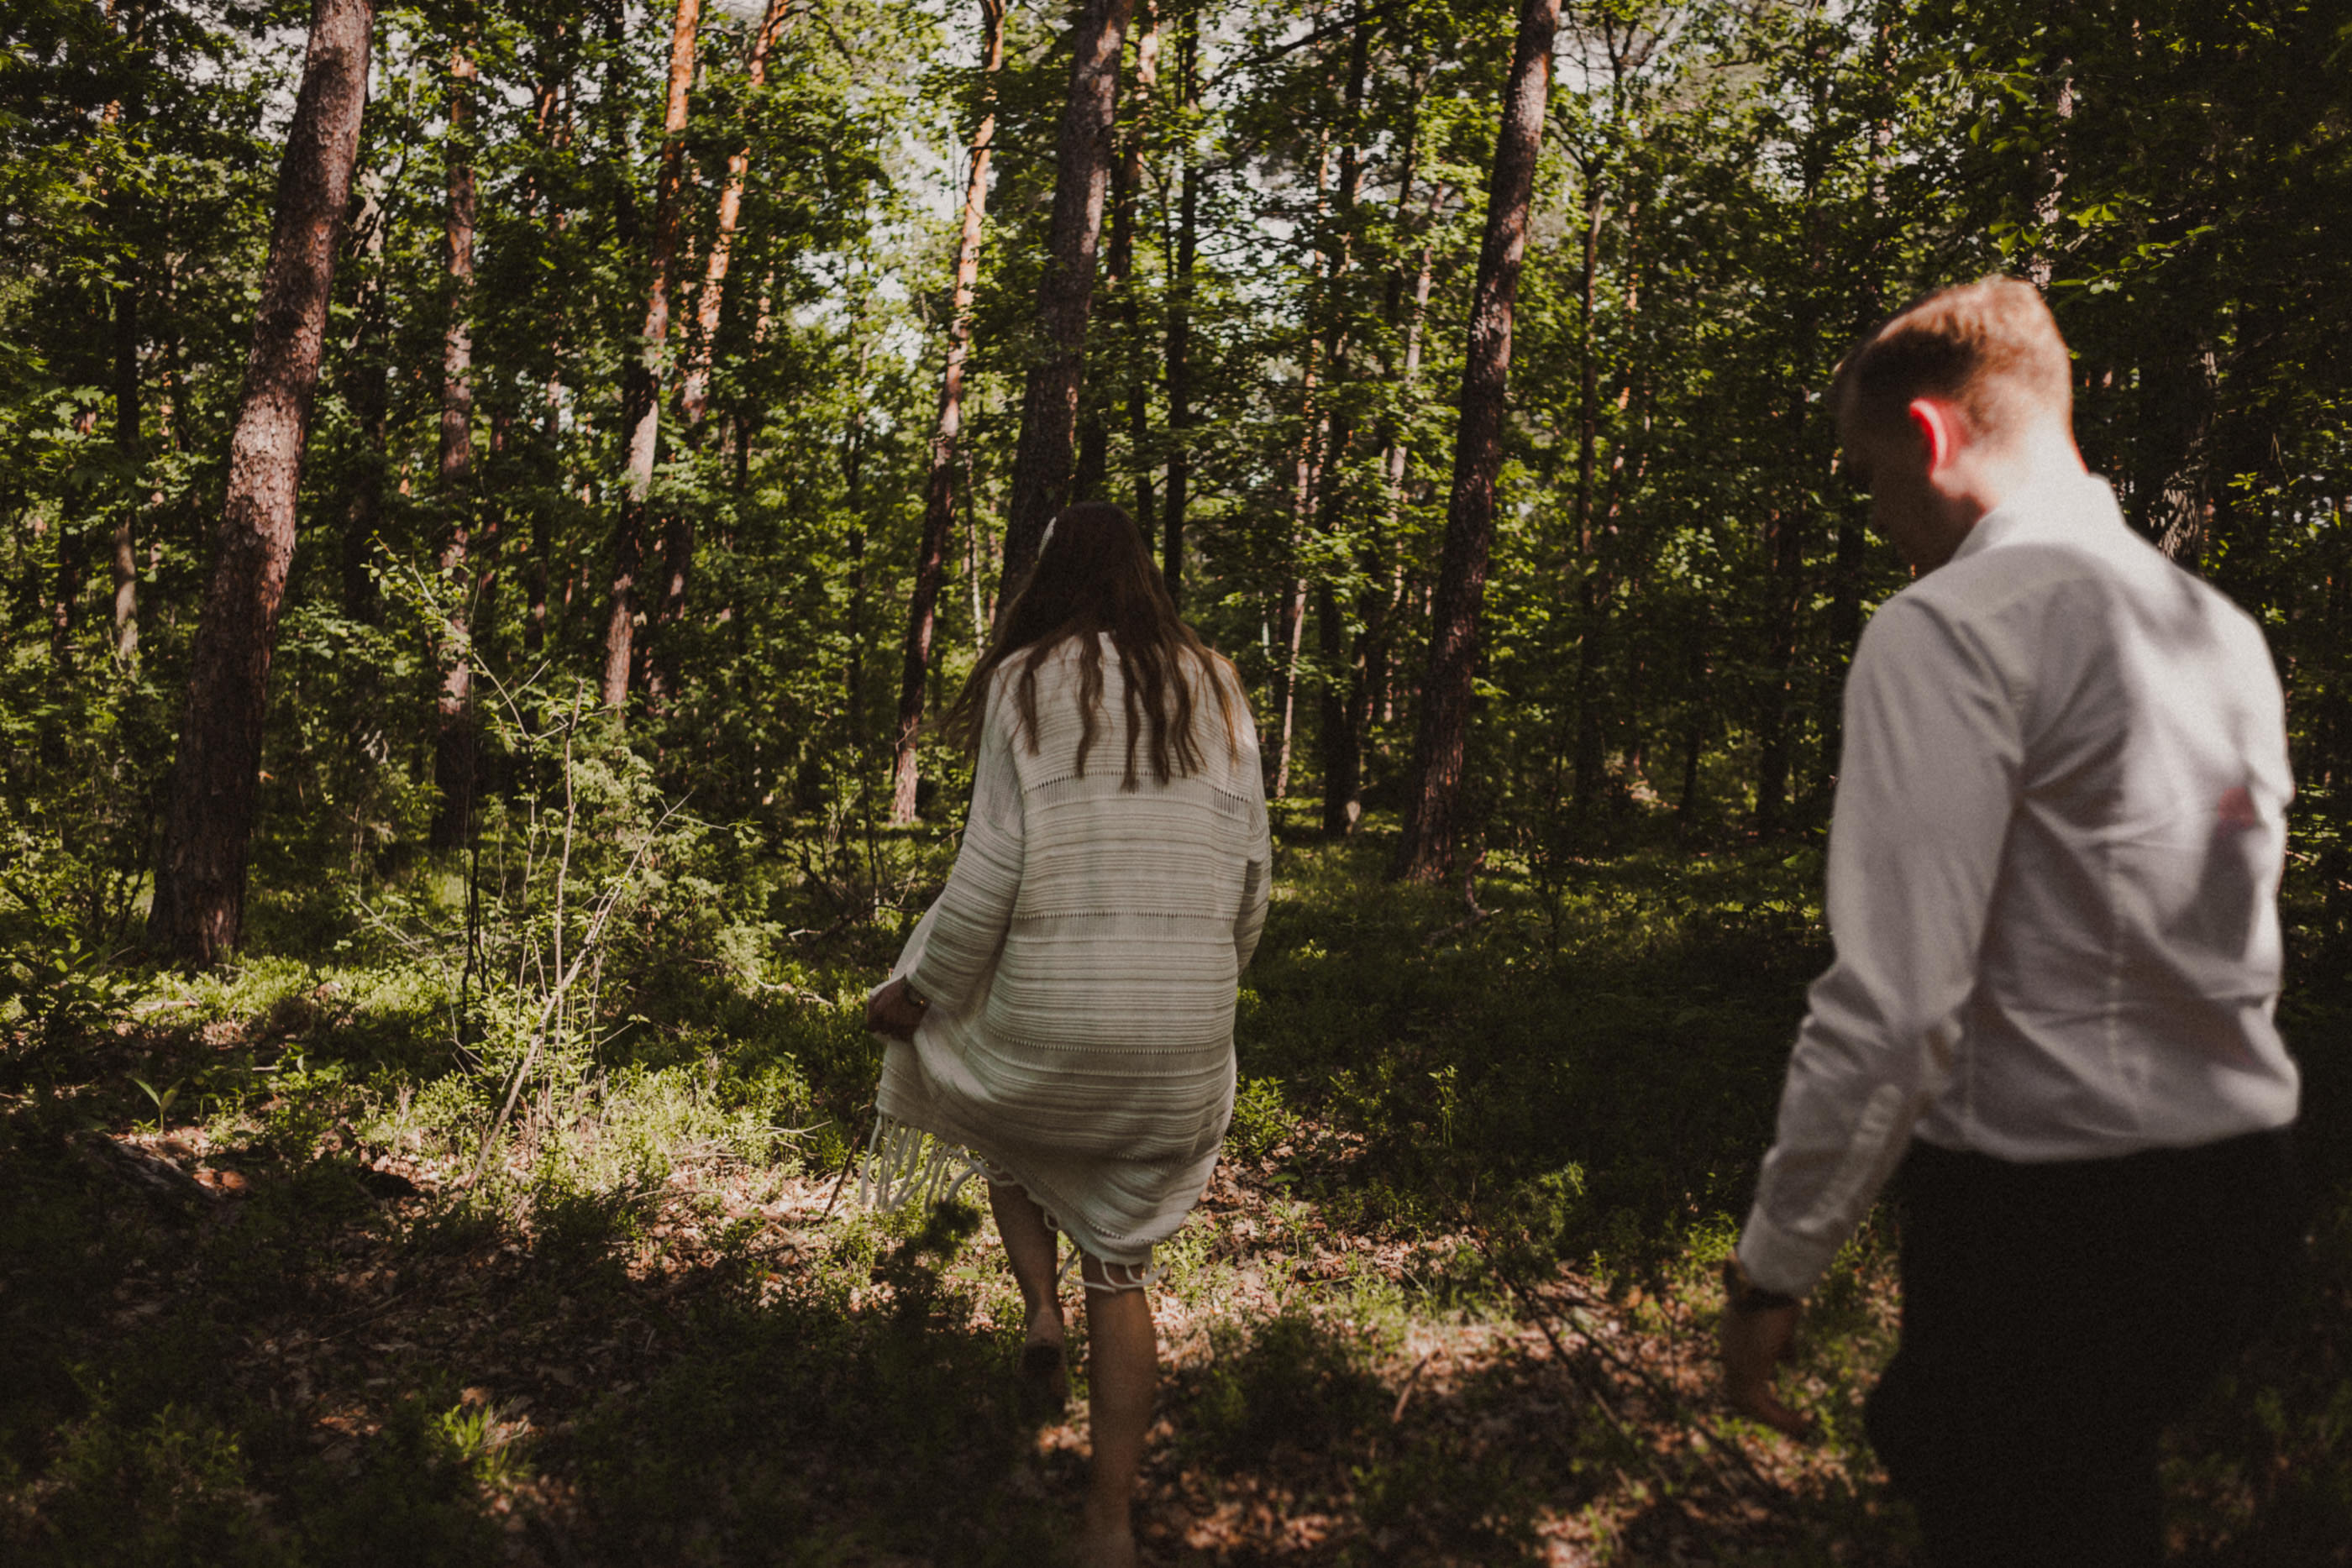 Krótka historia o miłości - Sesja narzeczeńska w lesie